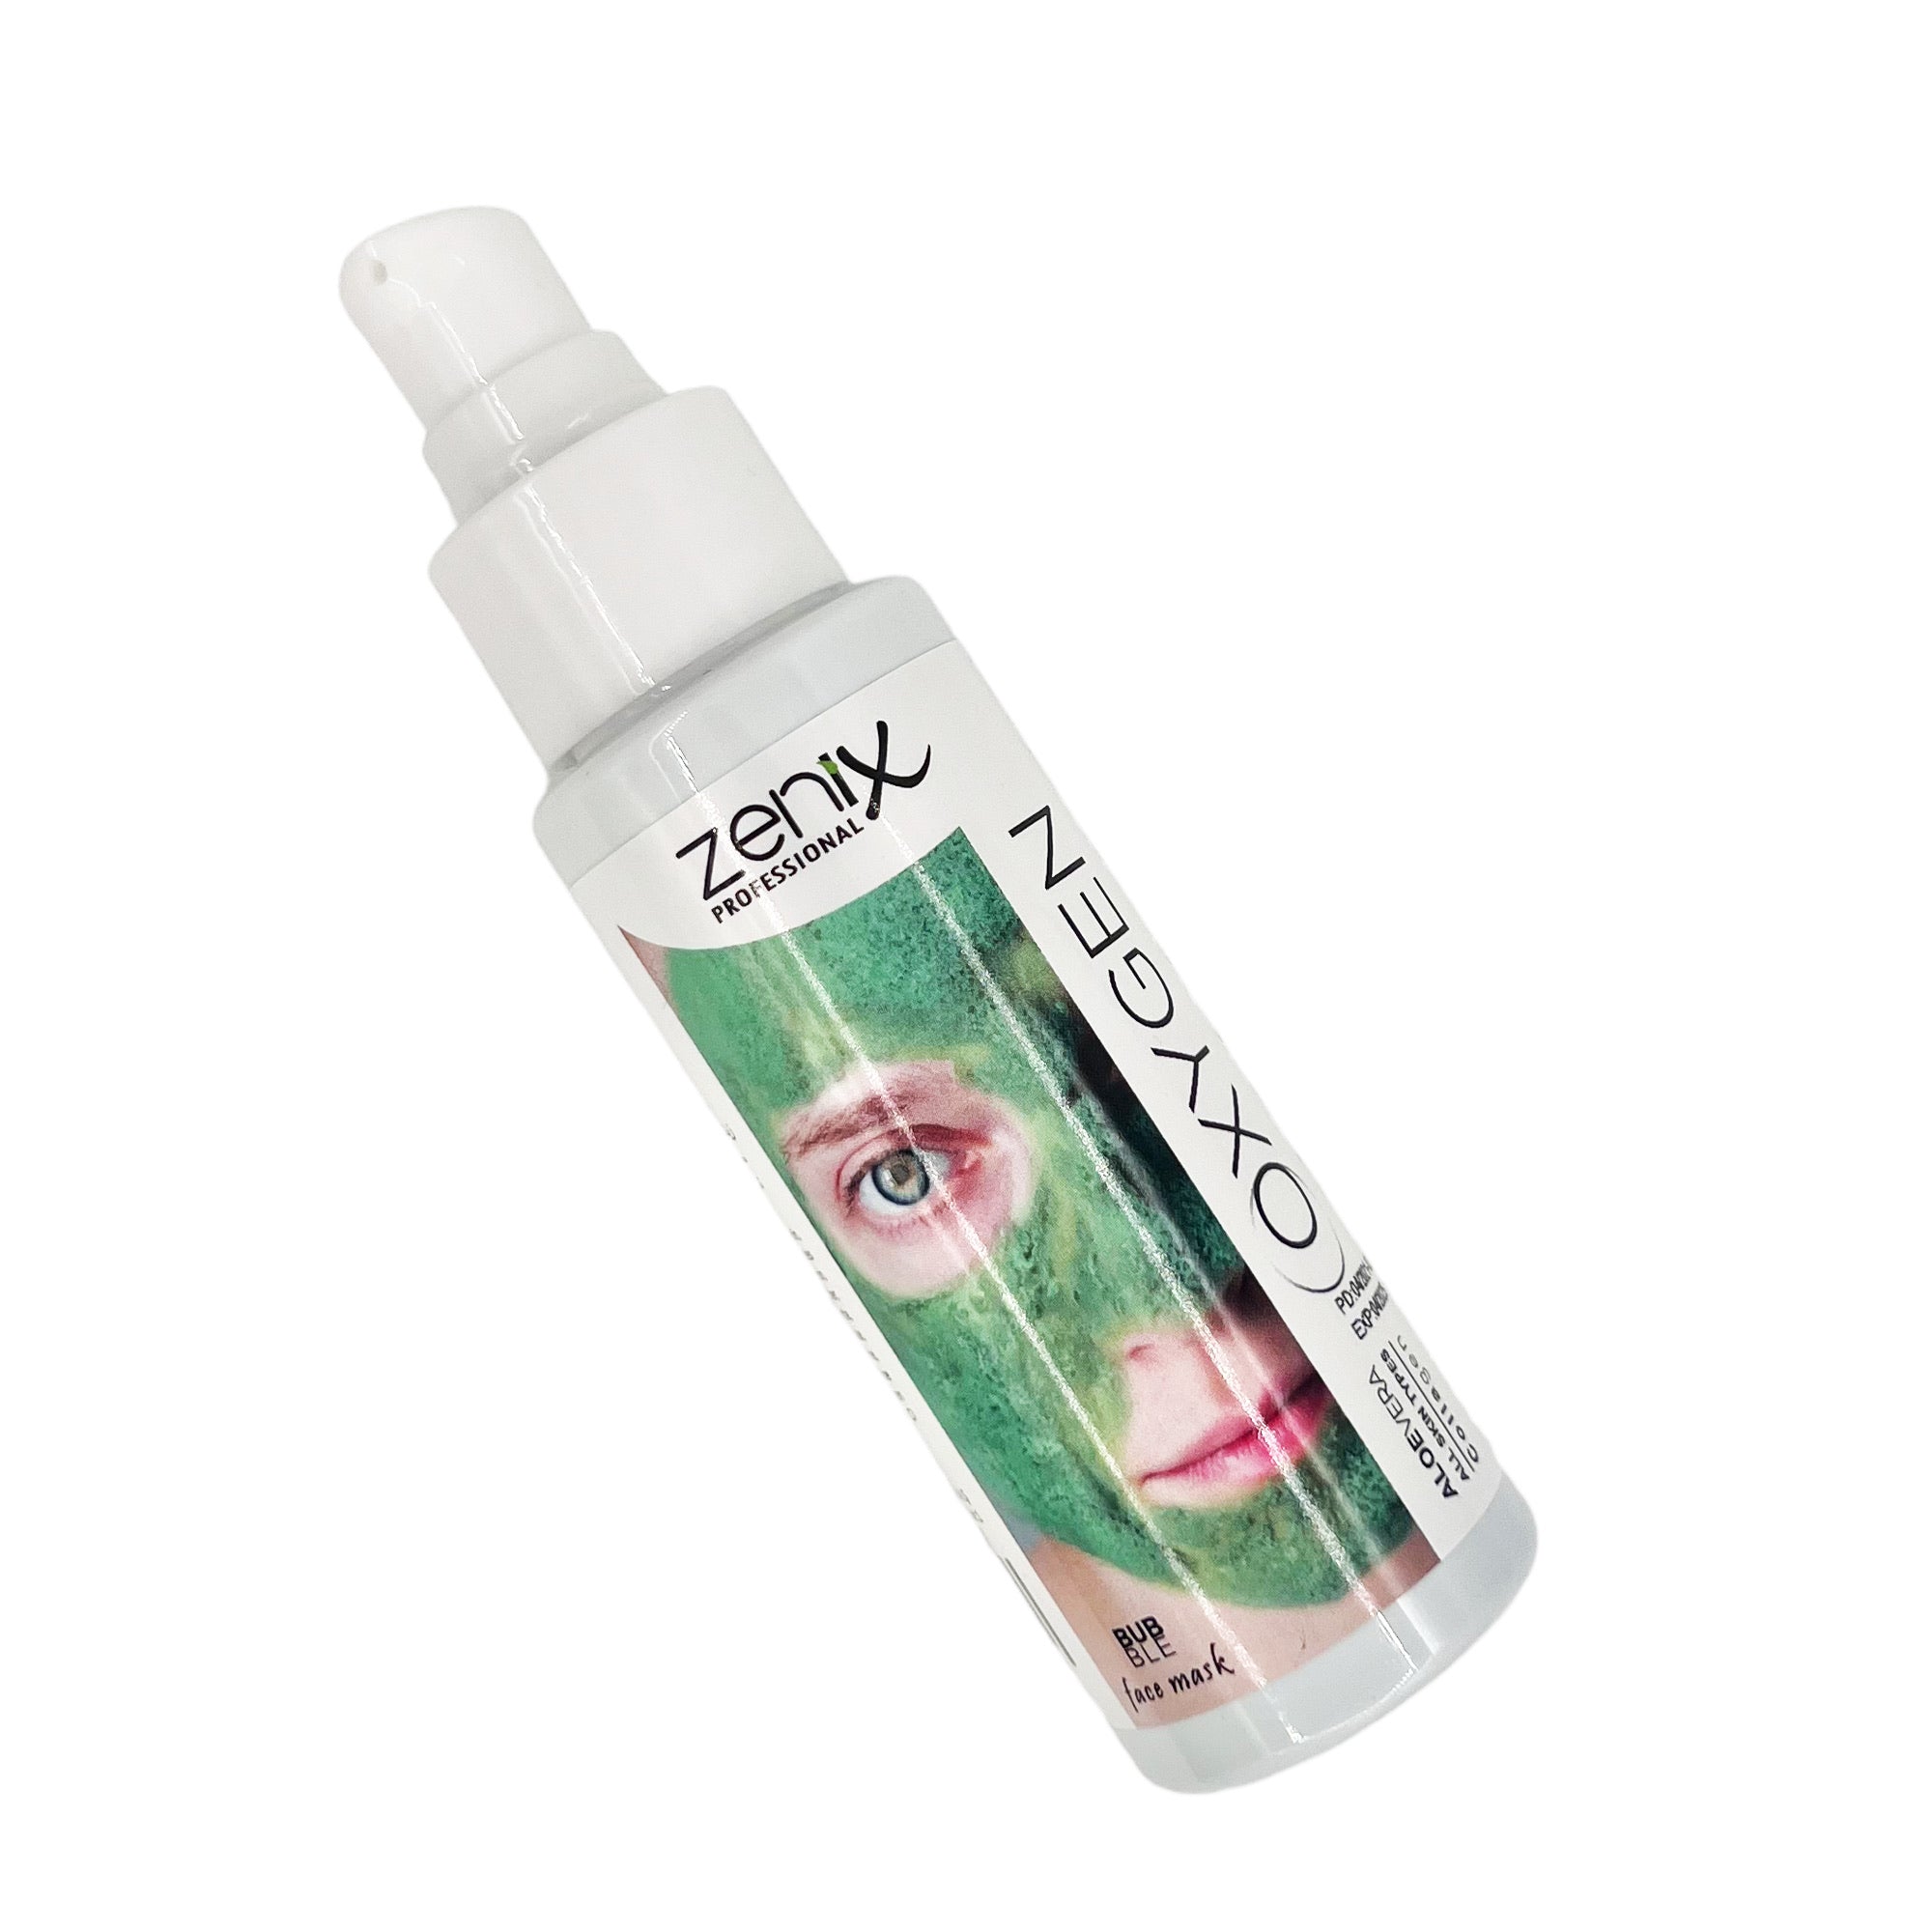 Zenix - Face Care Mask Oxygen Aloe Vera 70ml